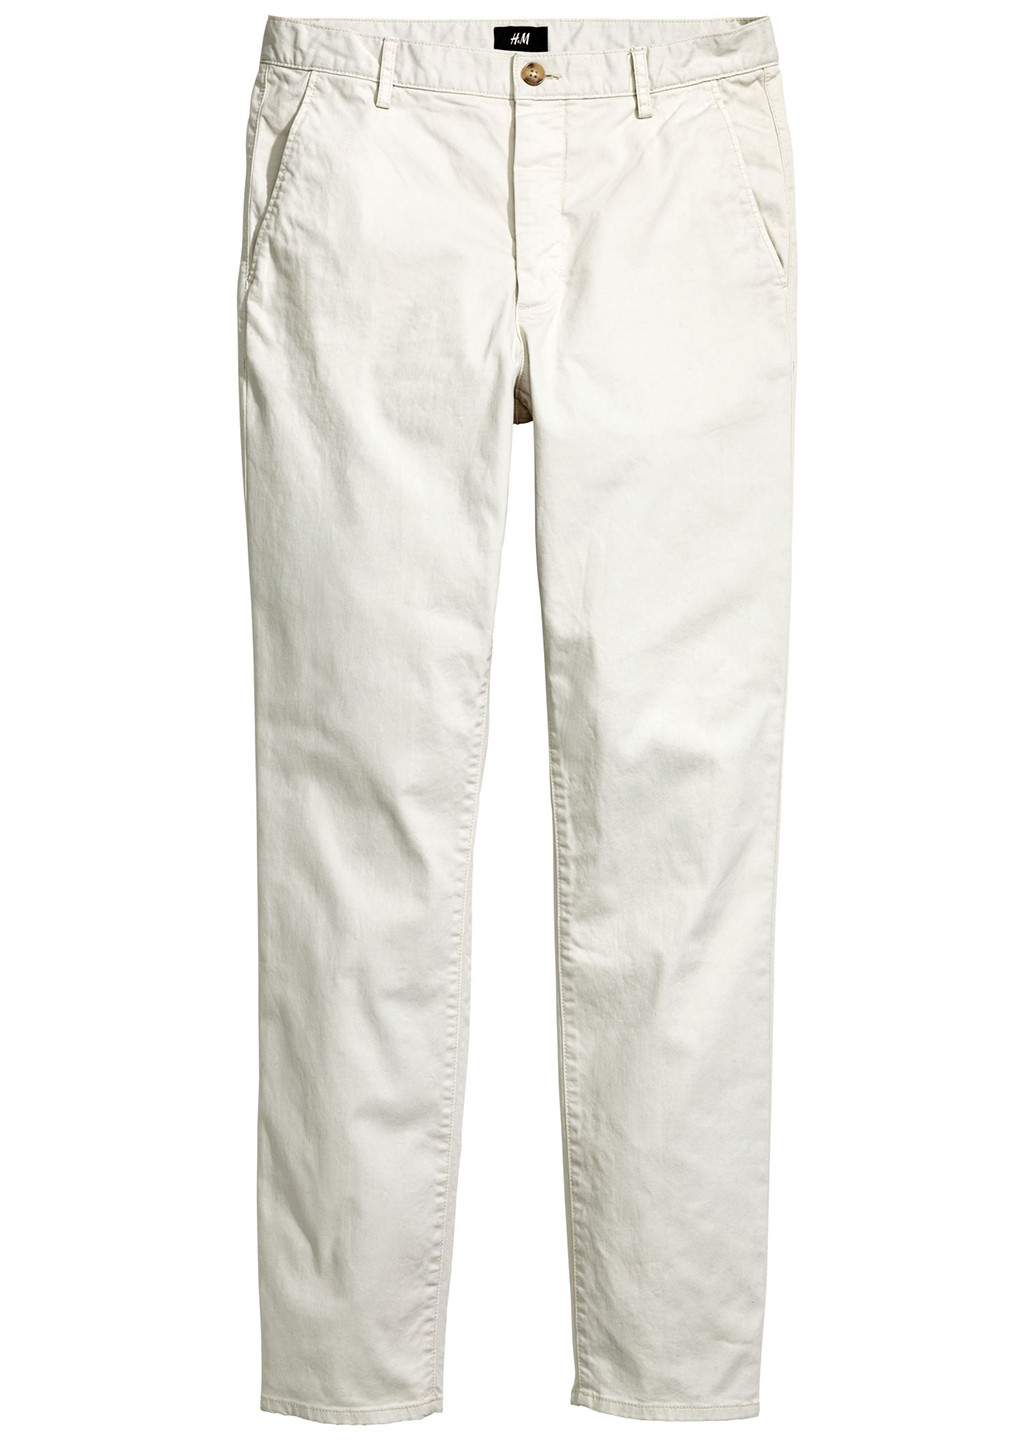 Светло-бежевые кэжуал демисезонные чиносы брюки H&M